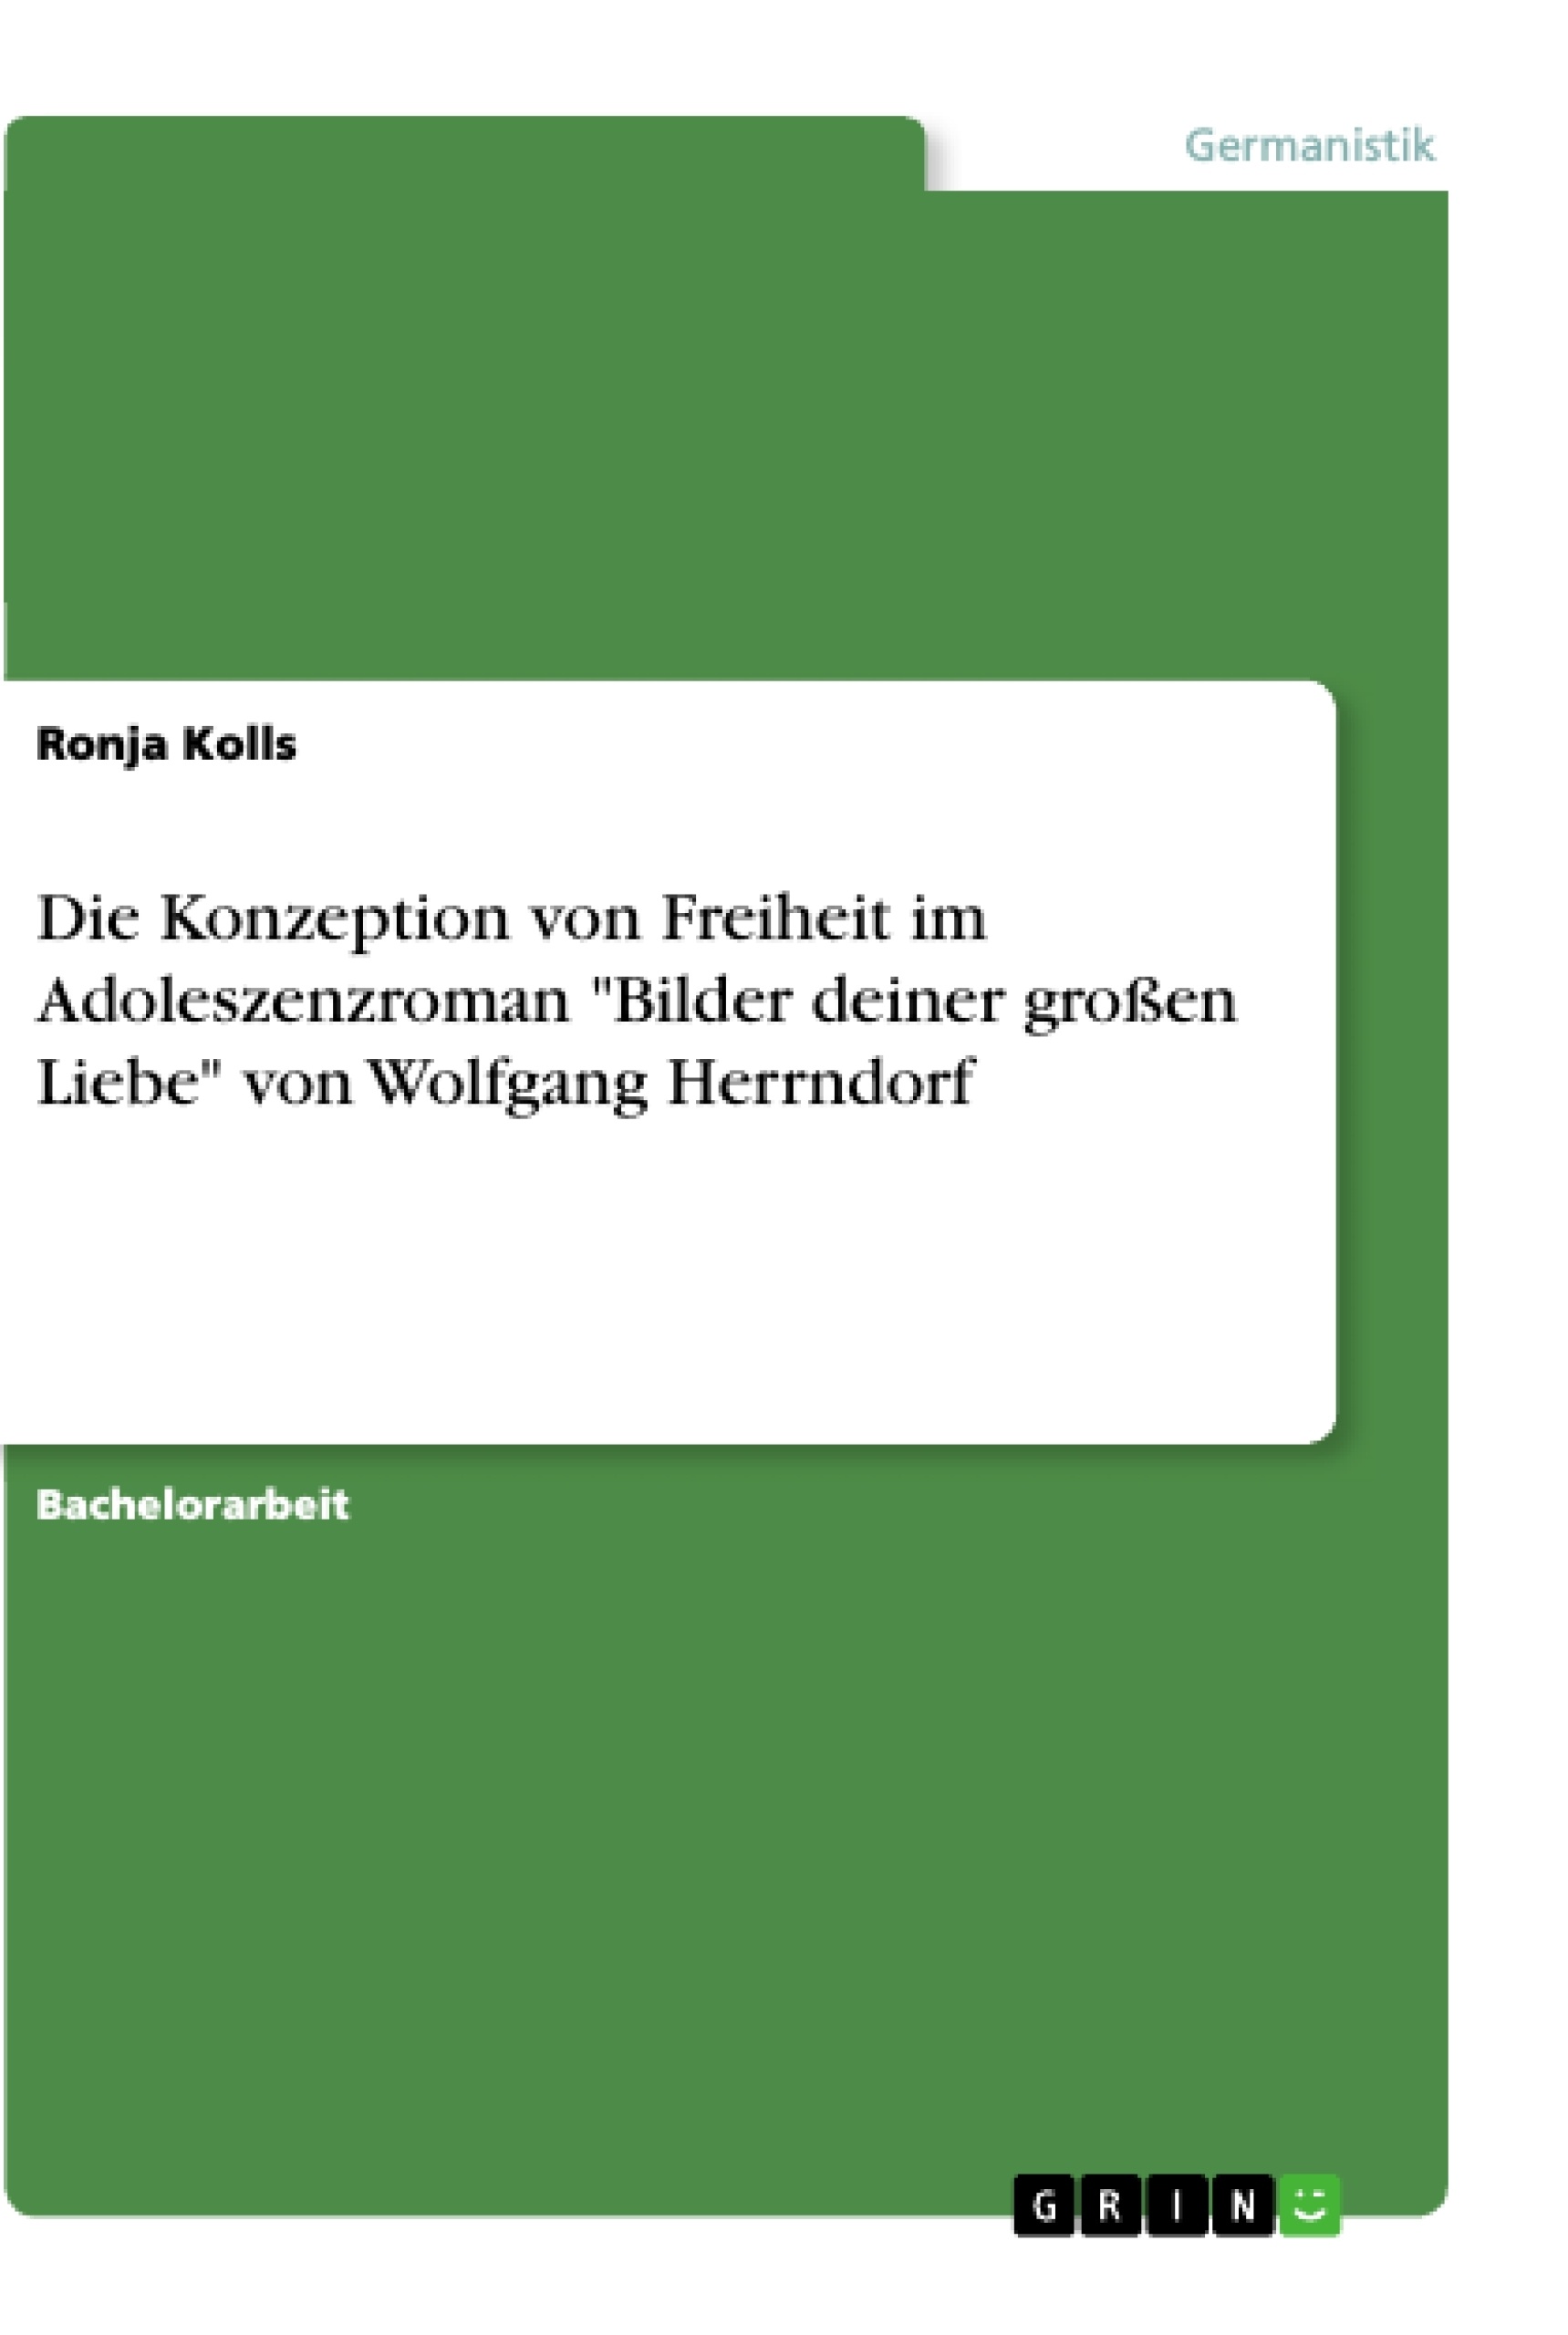 Title: Die Konzeption von Freiheit im Adoleszenzroman "Bilder deiner großen Liebe" von Wolfgang Herrndorf